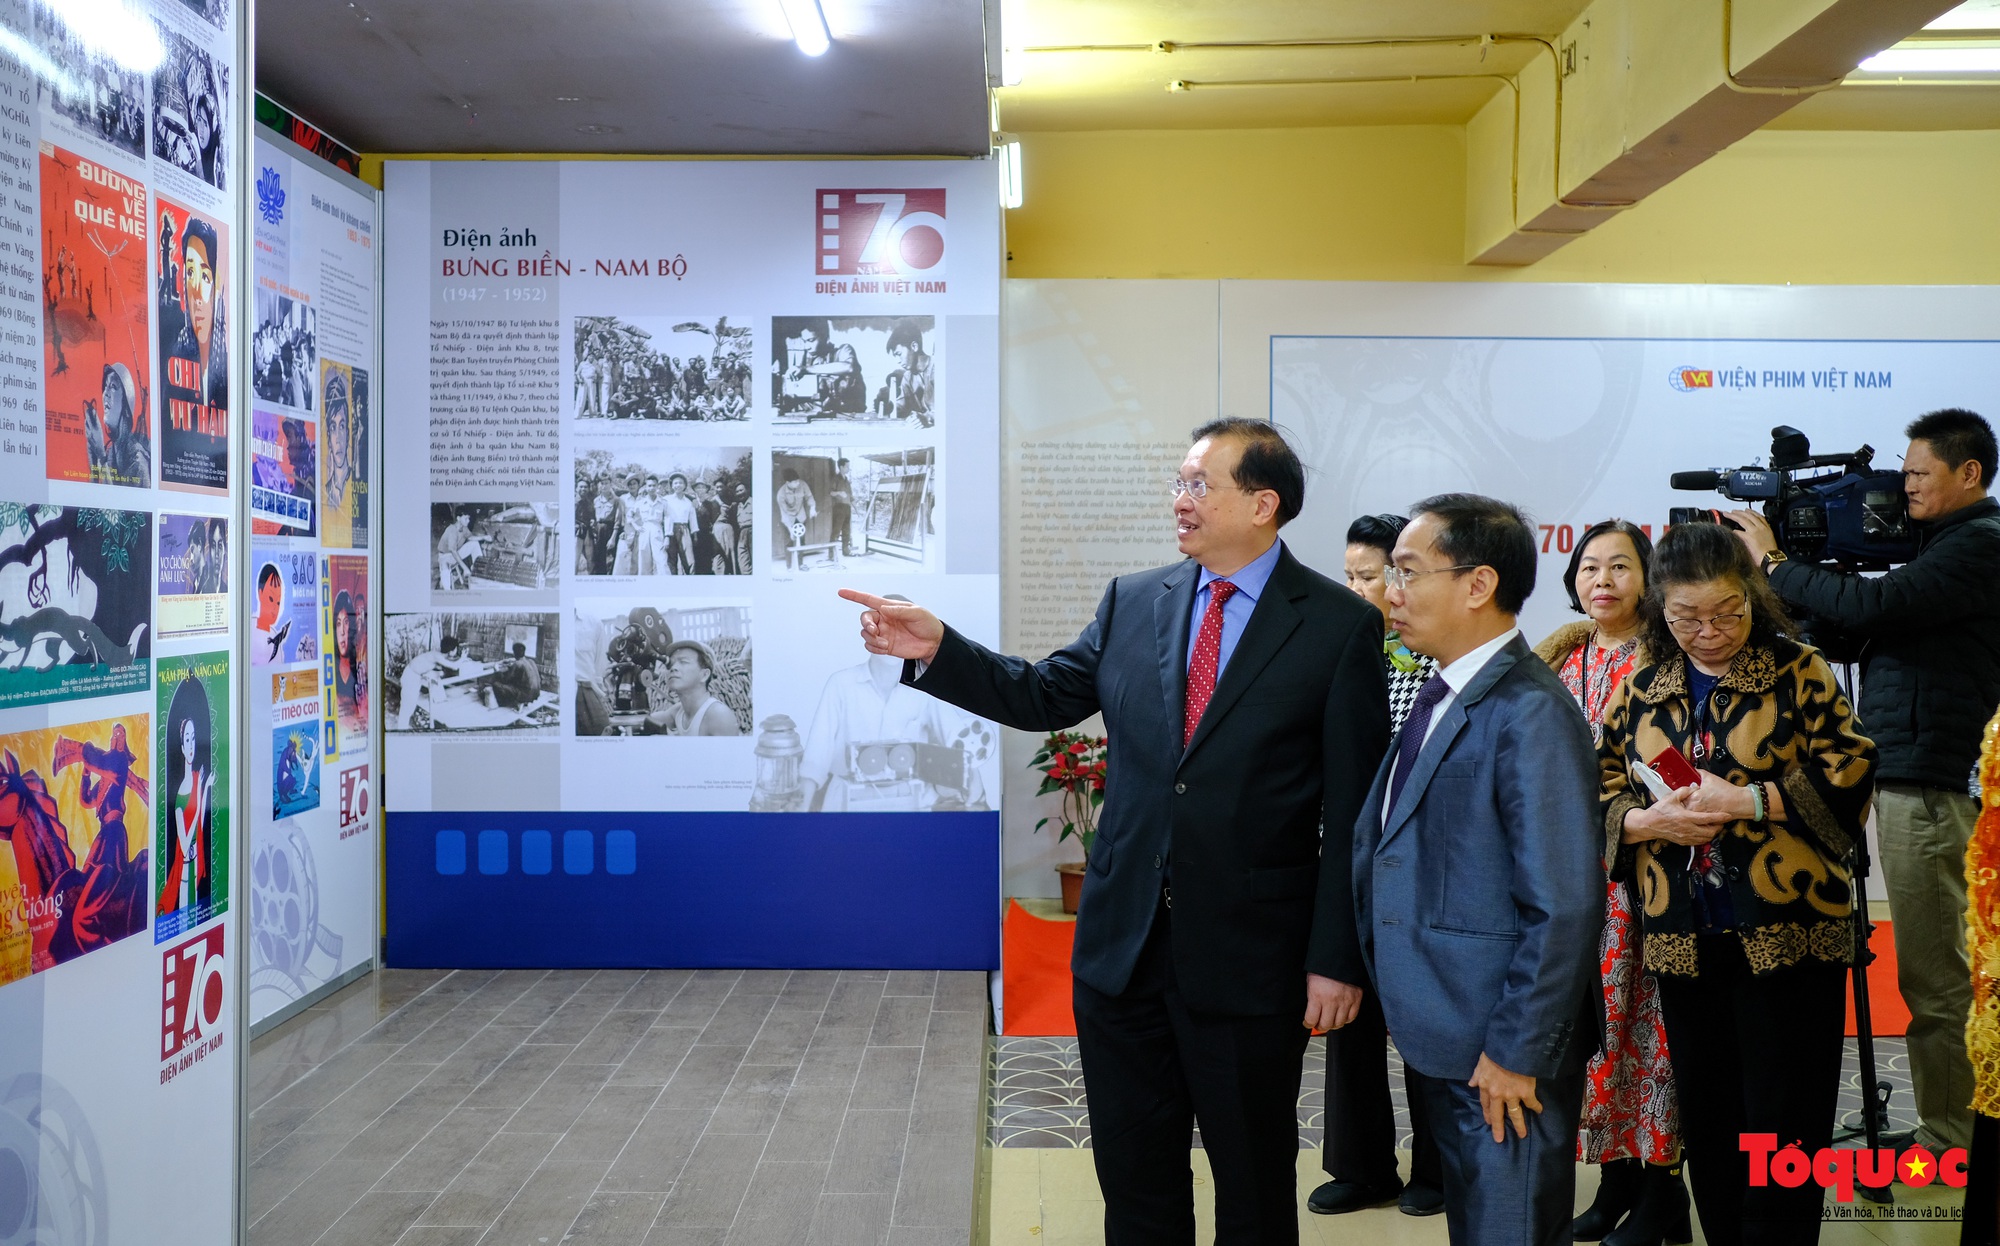 Hơn 200 tư liệu, hiện vật quý được trưng bày kỷ niệm 70 năm Điện ảnh Cách mạng Việt Nam - Ảnh 6.